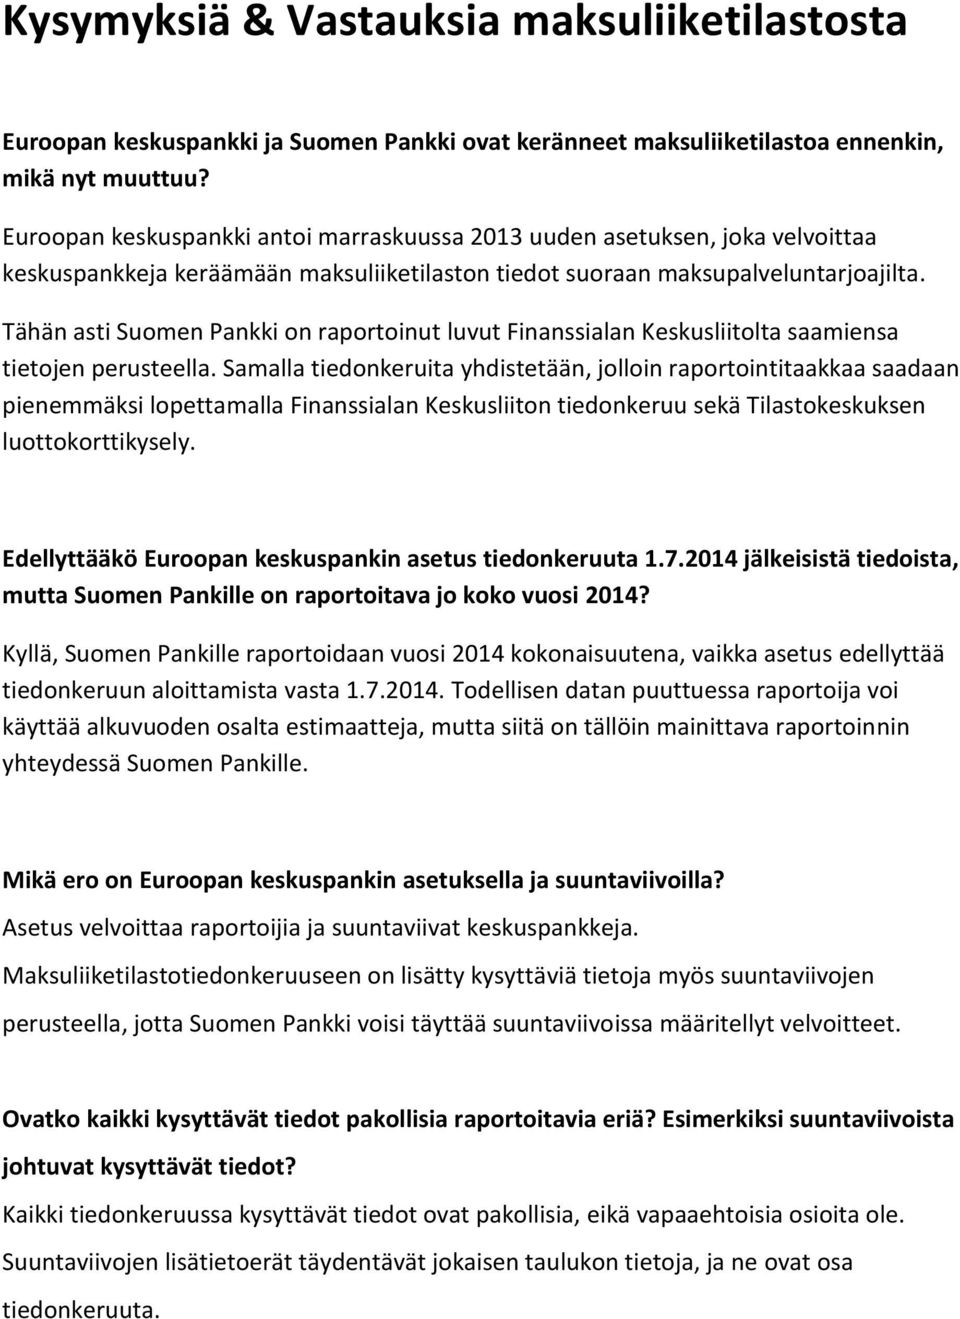 Tähän asti Suomen Pankki on raportoinut luvut Finanssialan Keskusliitolta saamiensa tietojen perusteella.